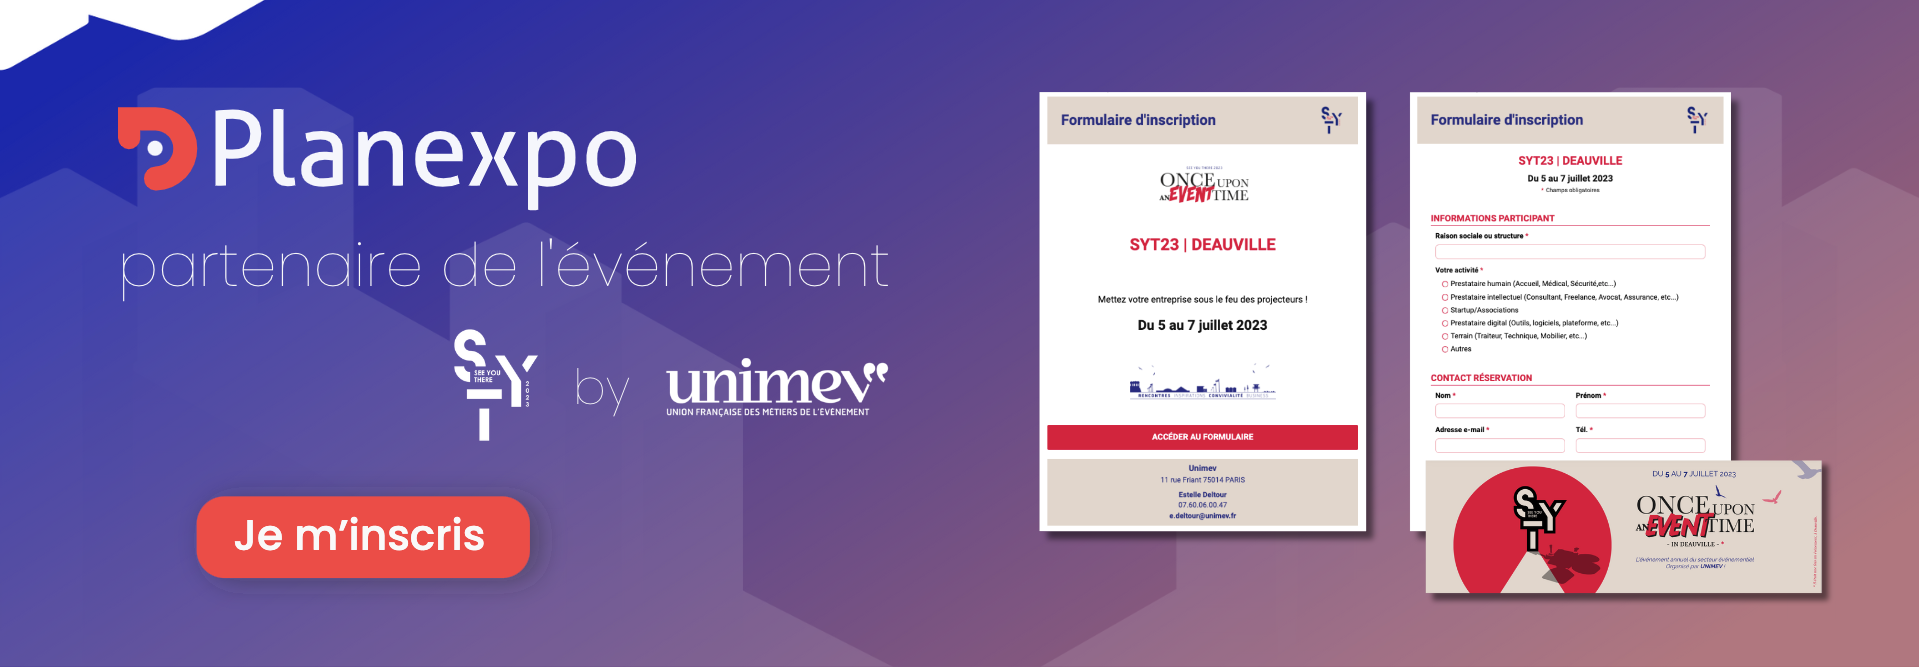 Bandeau annonce partenariat événement see you there organisé par UNIMEV